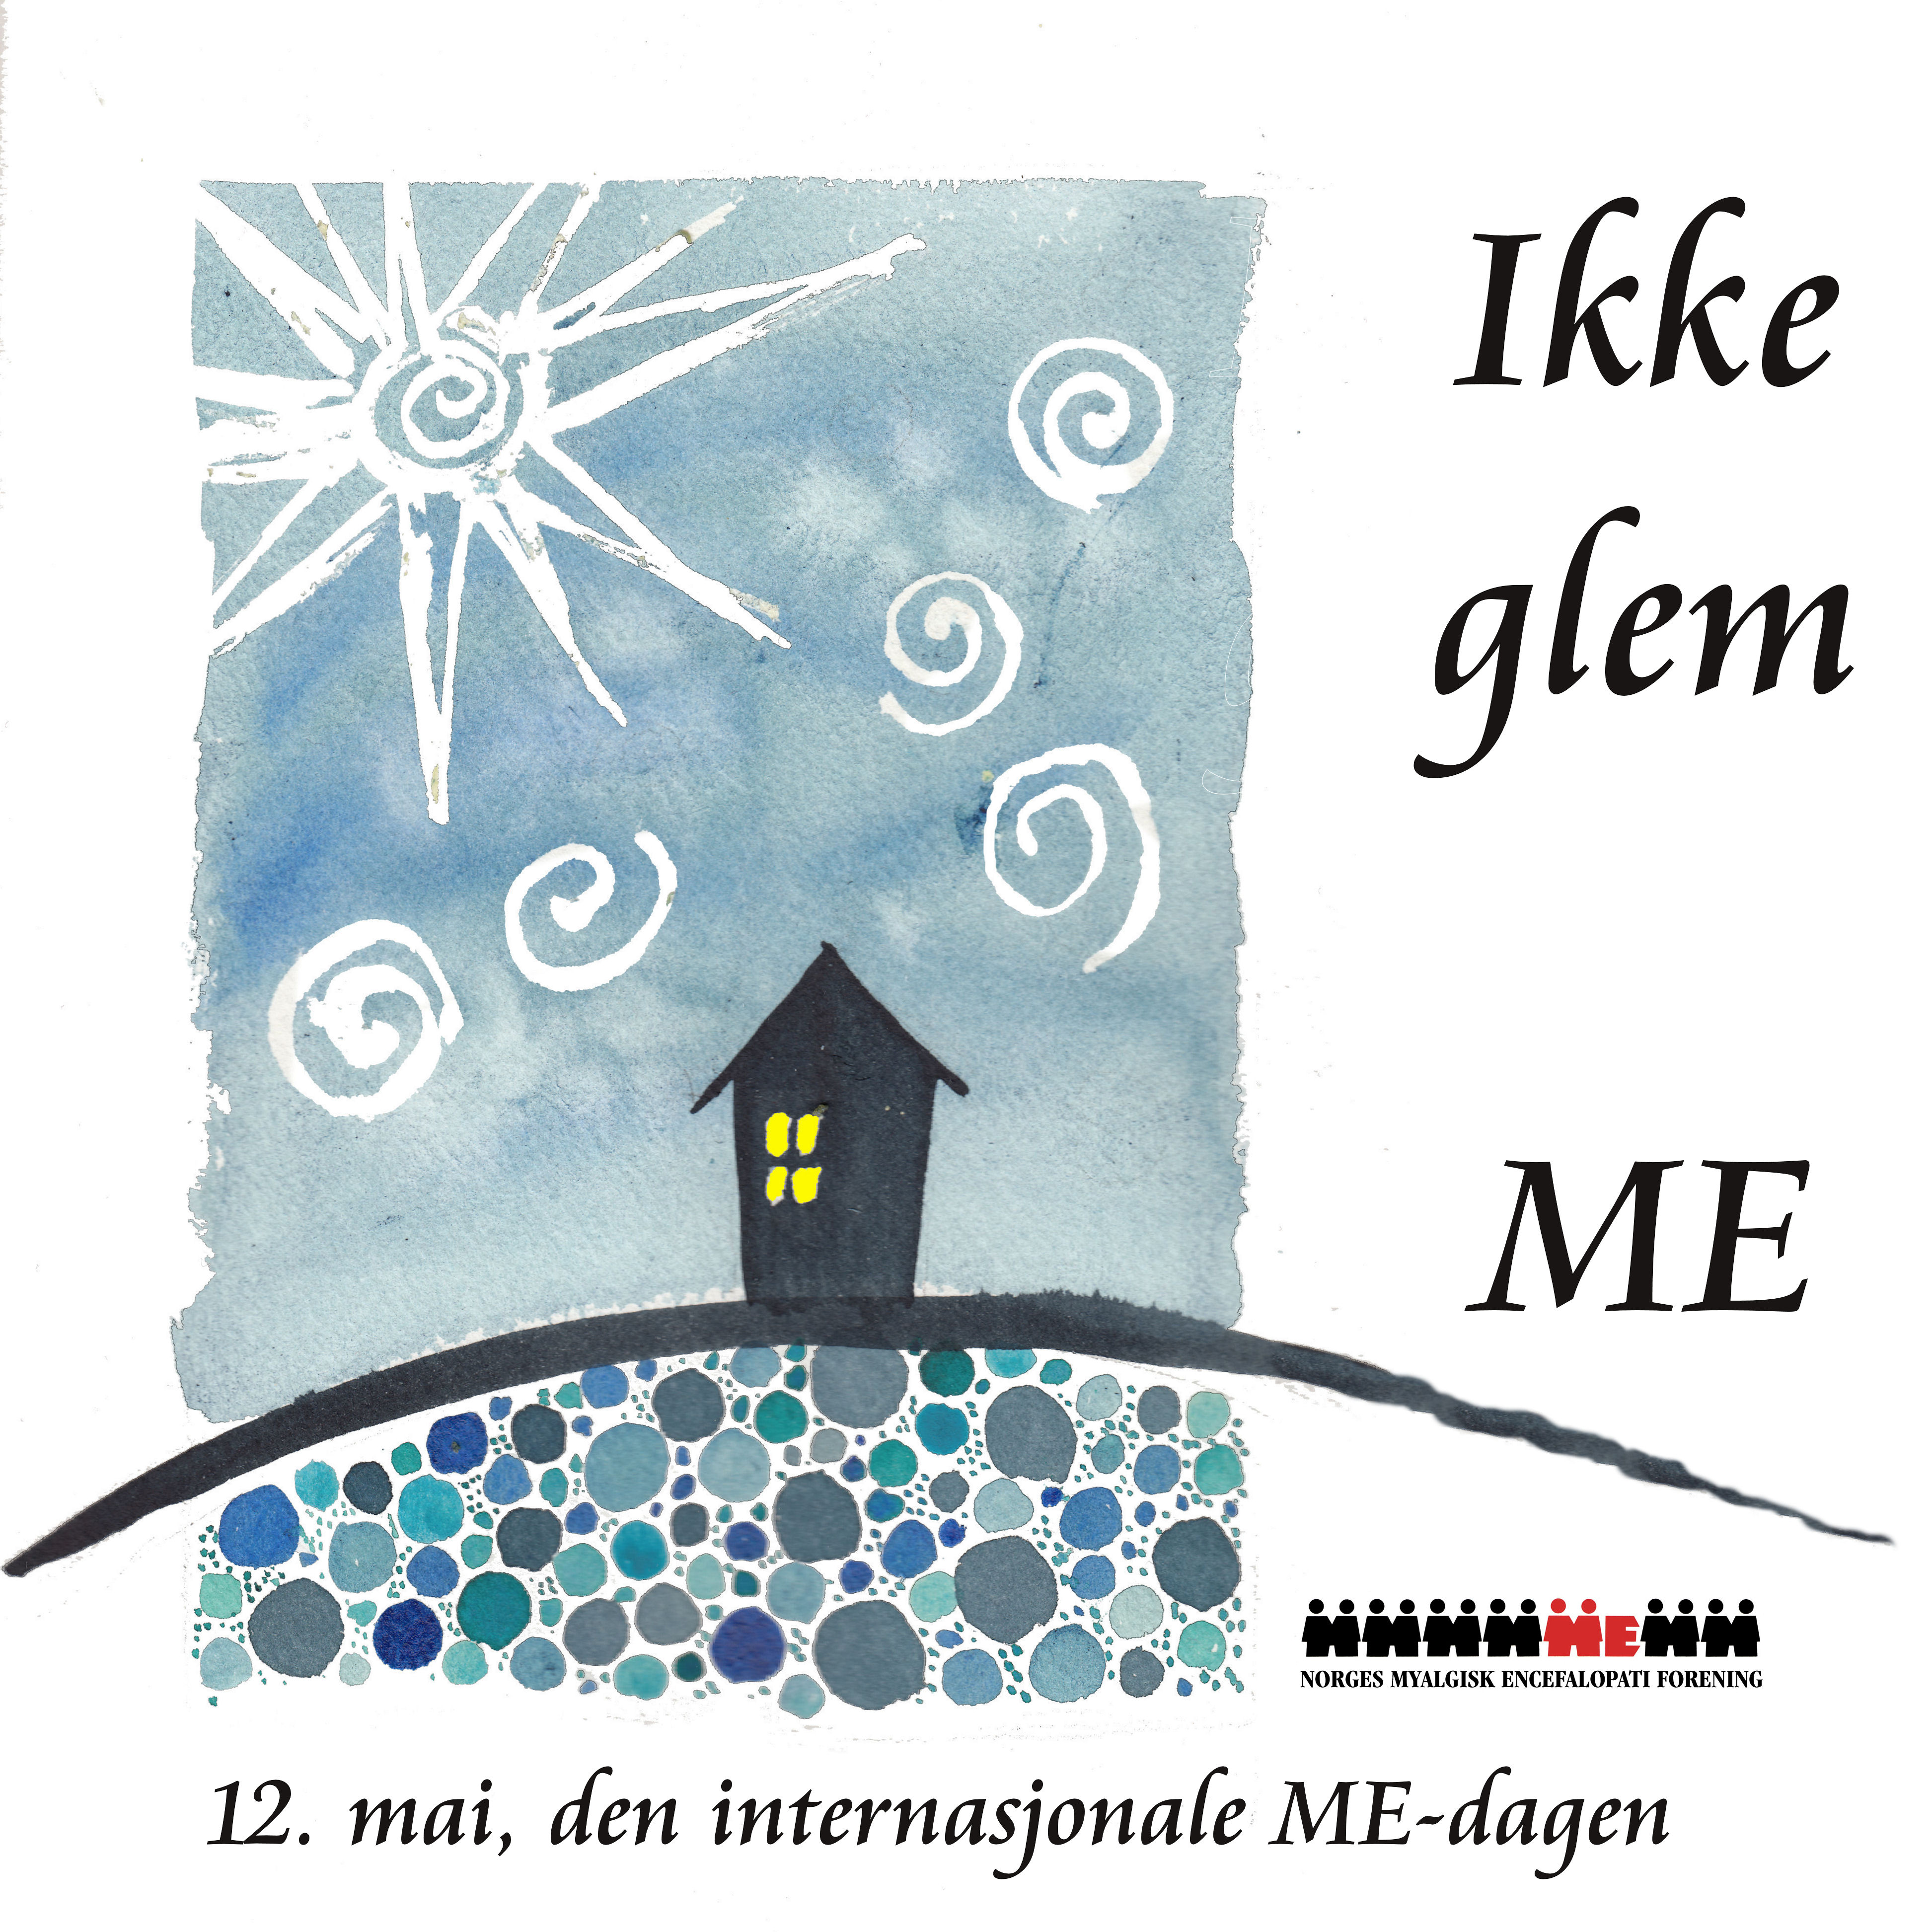 Den internasjonale ME-dagen 12. mai profilbilde hus